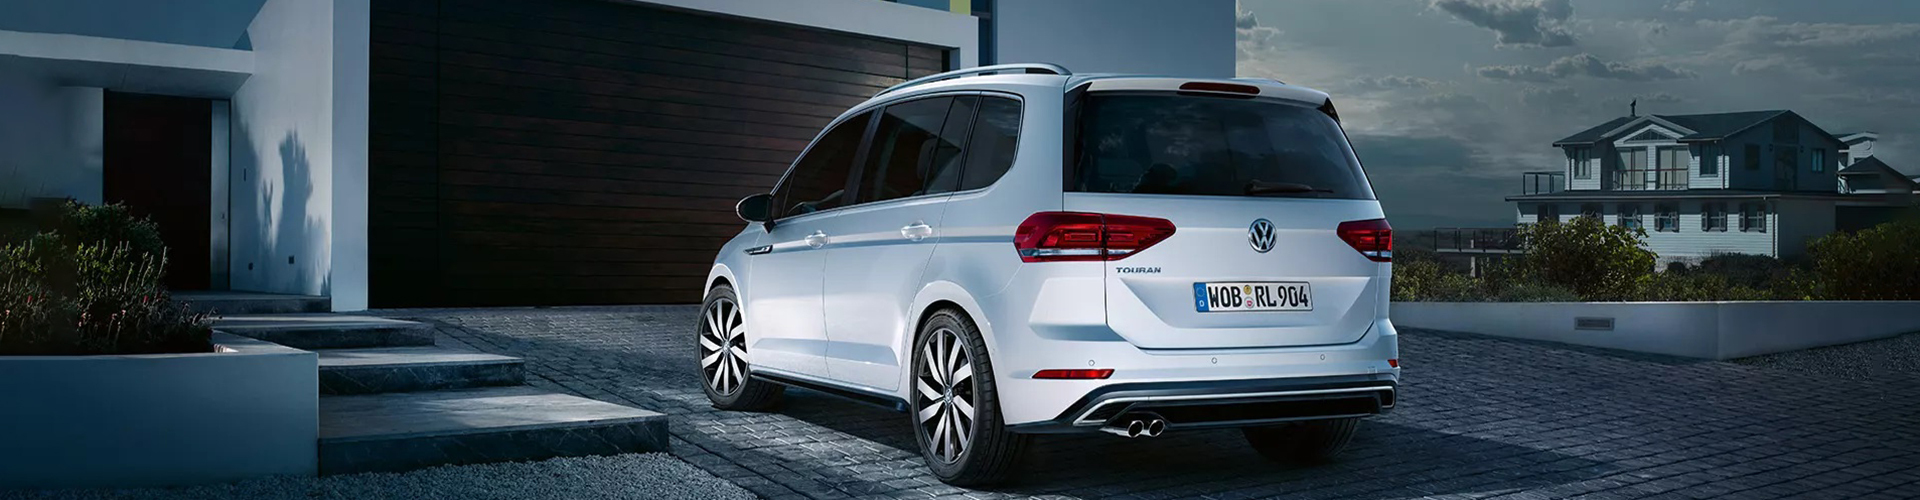 Volkswagen Touran als Gebrauchtwagen kaufen